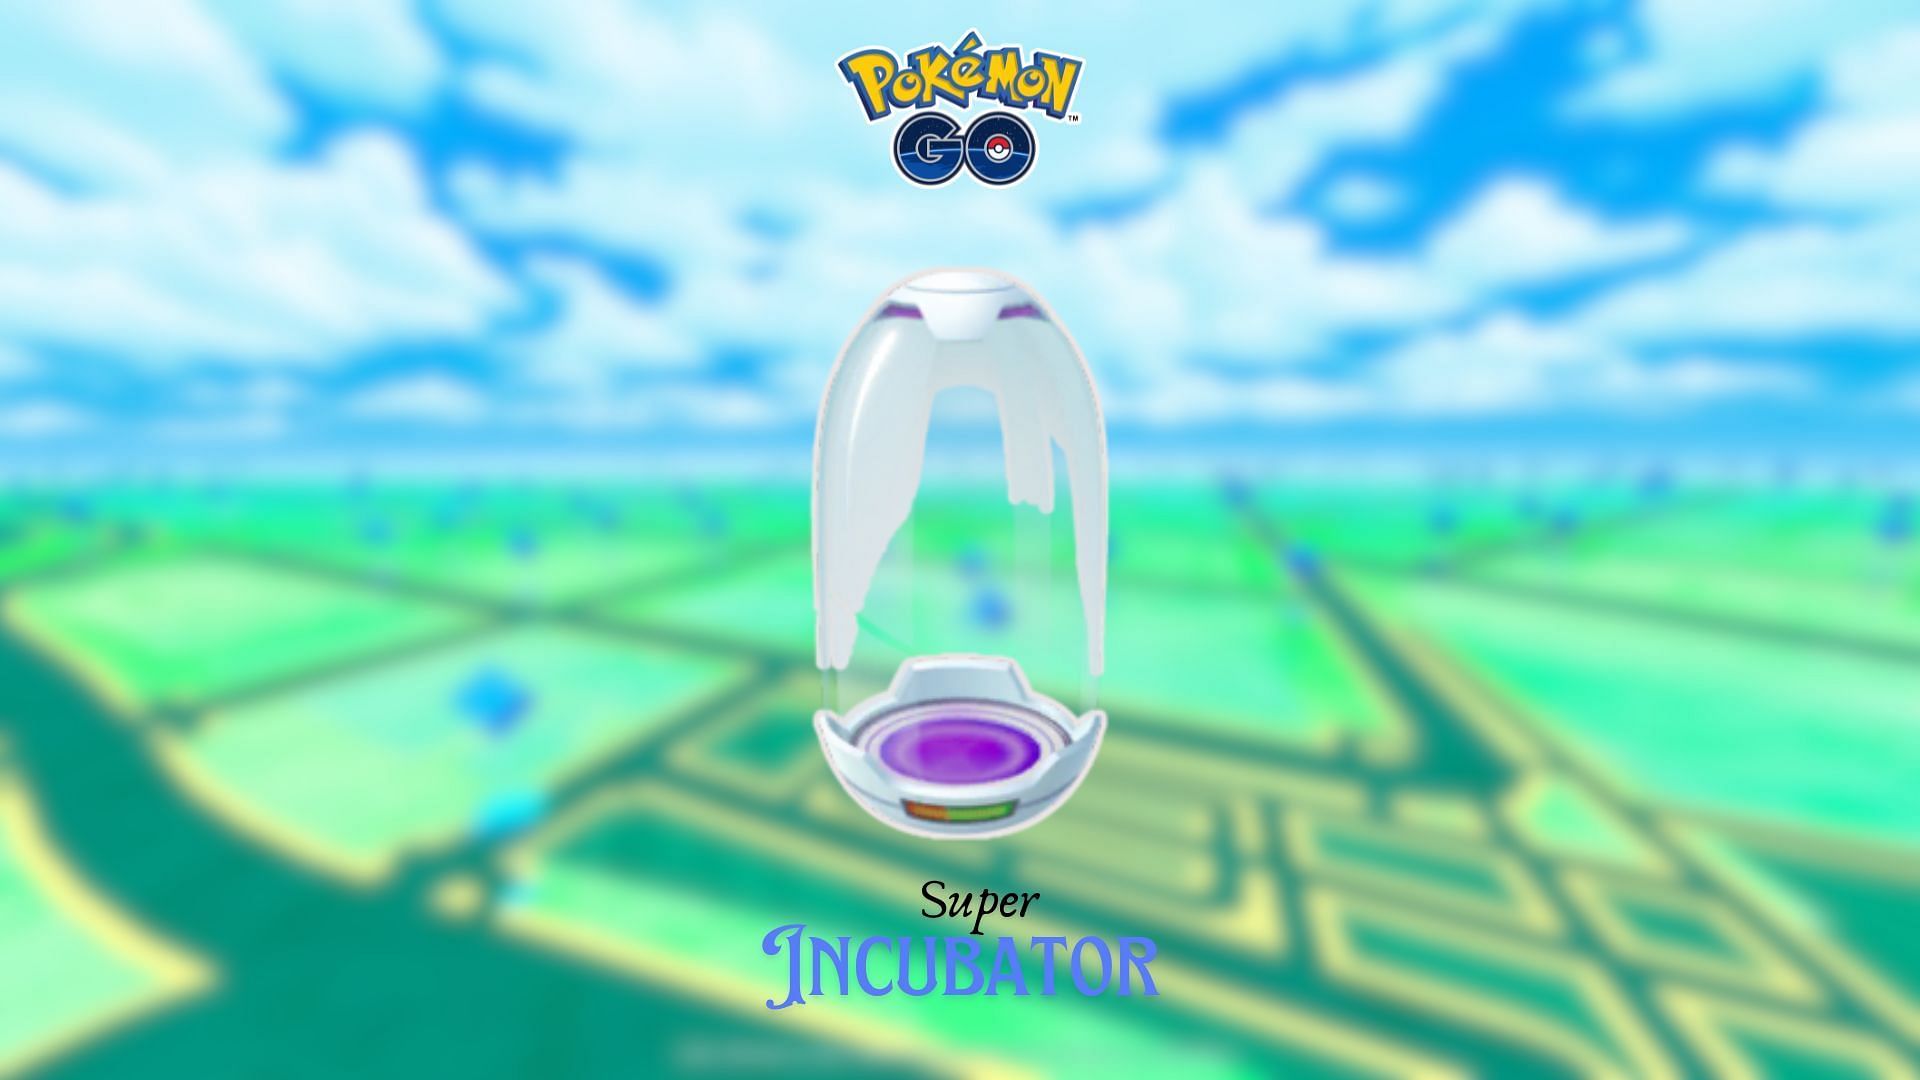 Purchase to get Super Incubators in Pokemon GO